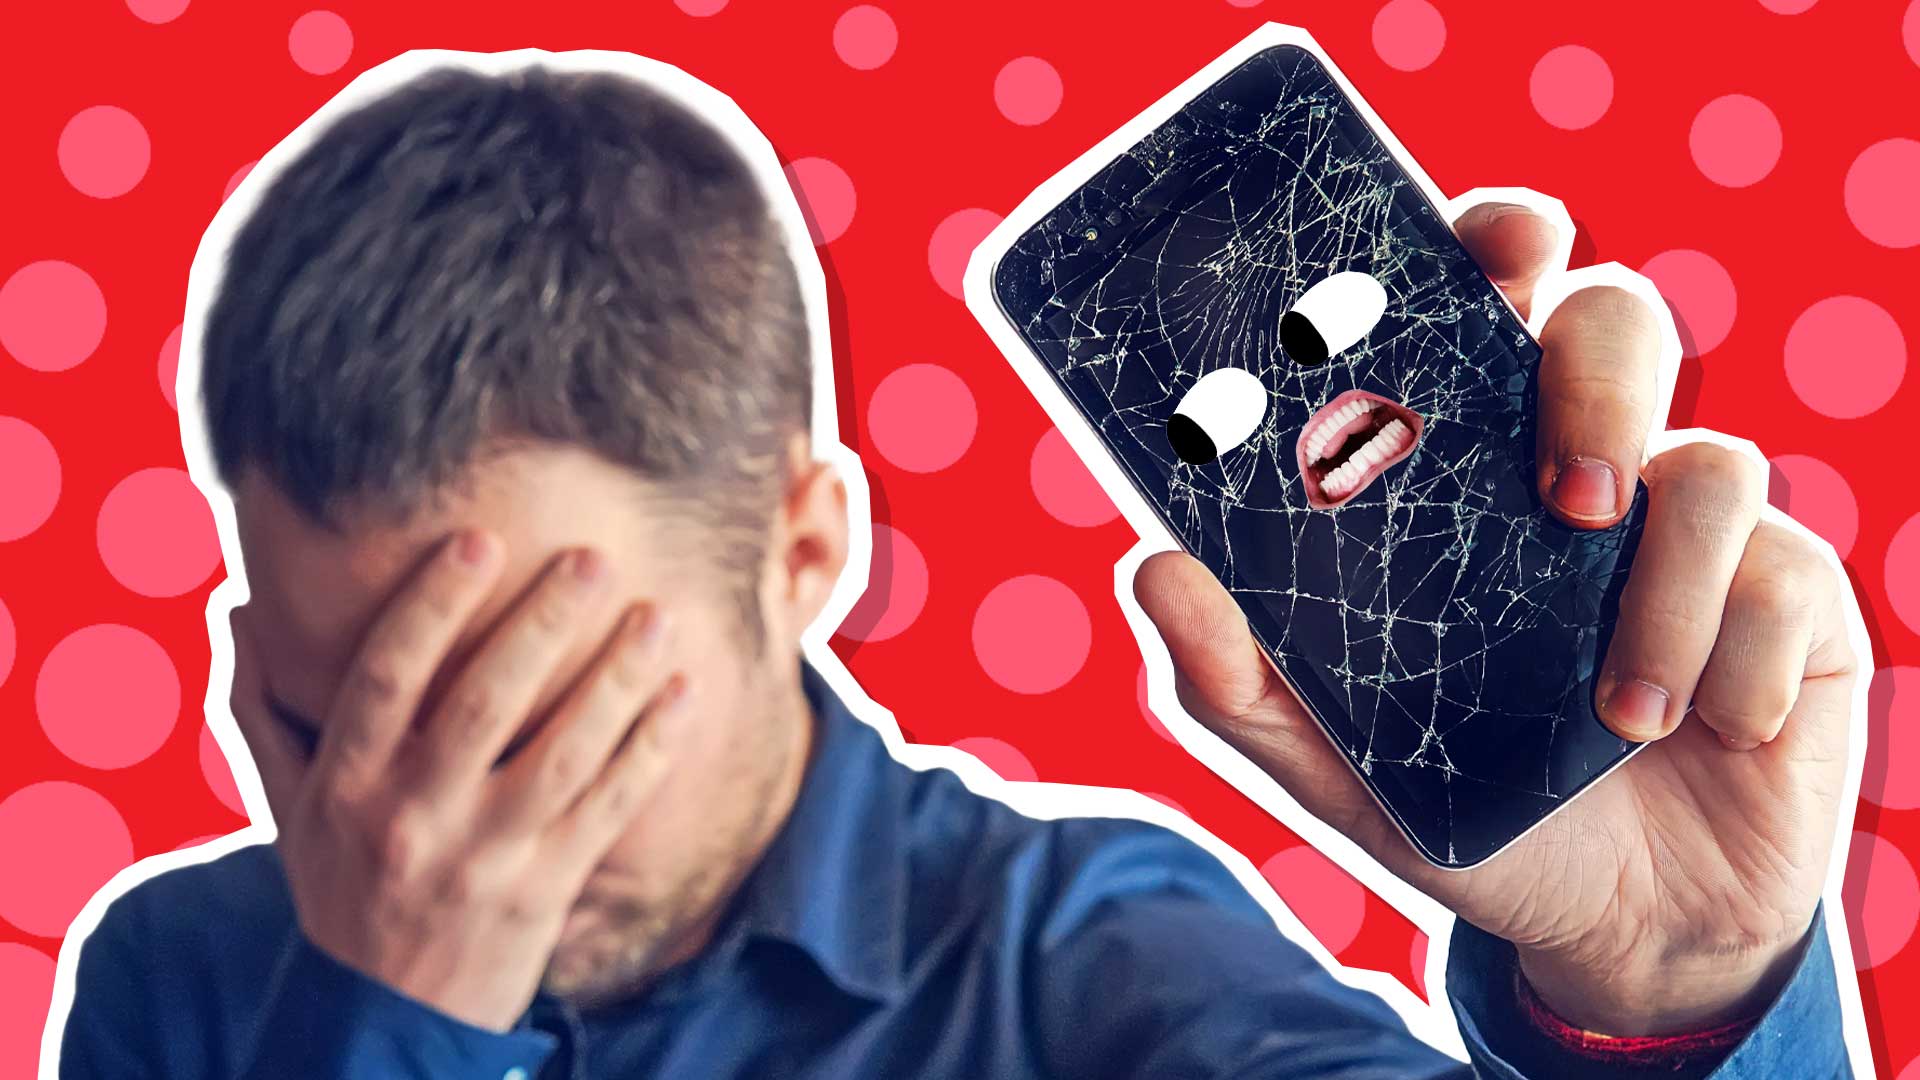 A man holding a broken smartphone